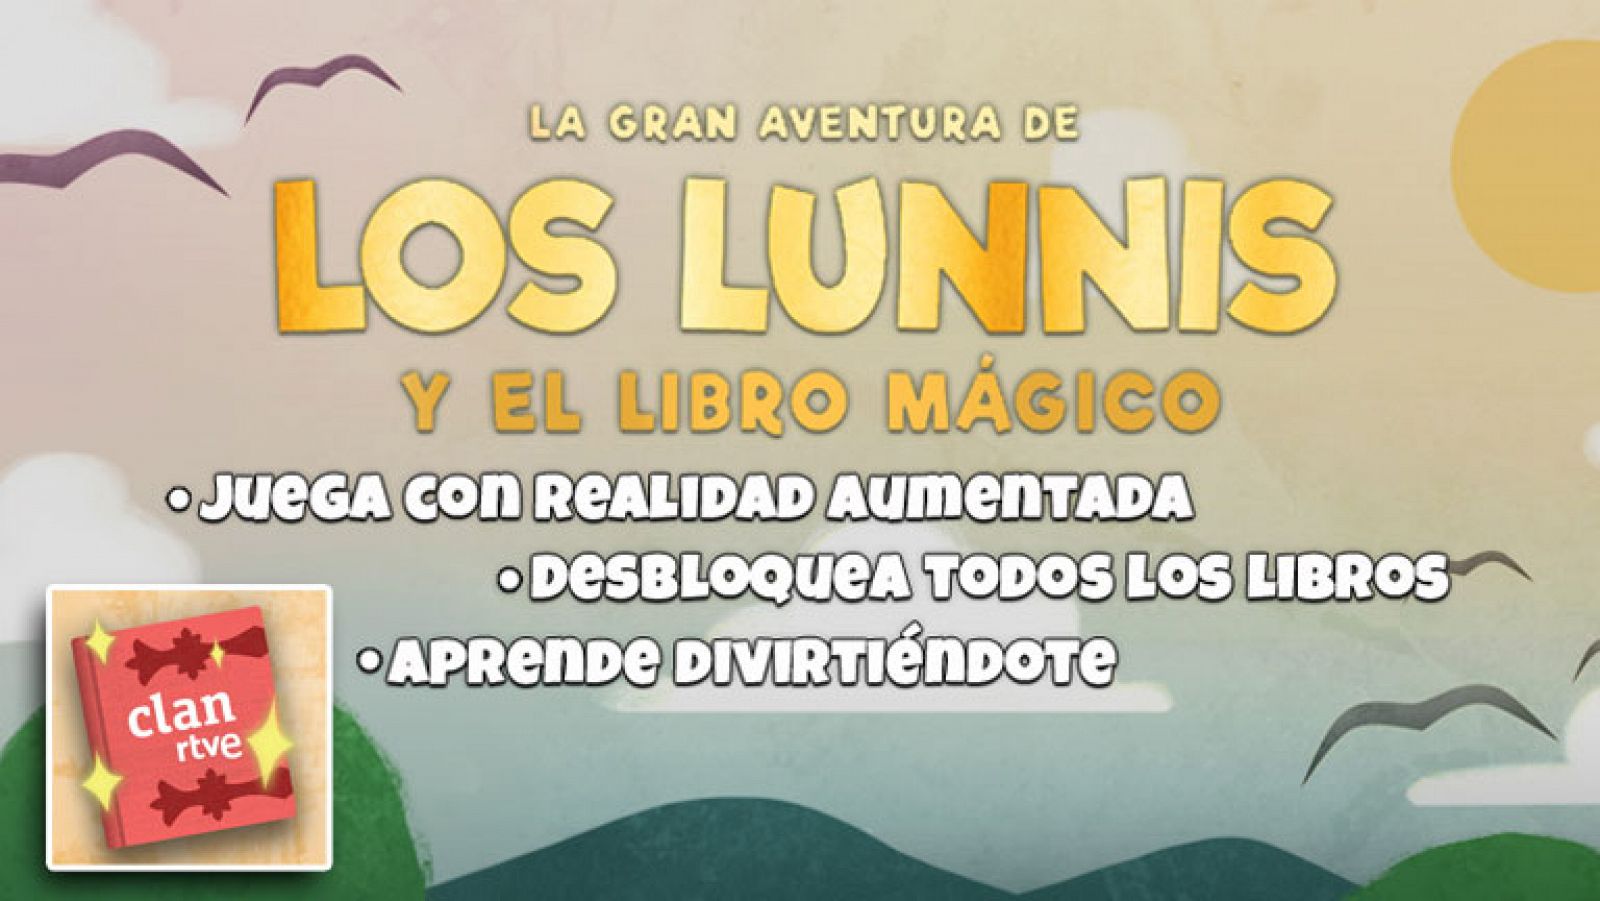 Clan lanza "La gran aventura de los Lunnis", una app de "realidad aumentada" que hará viajar a los niños al mundo mágico de los cuentos como nunca antes lo habían hecho